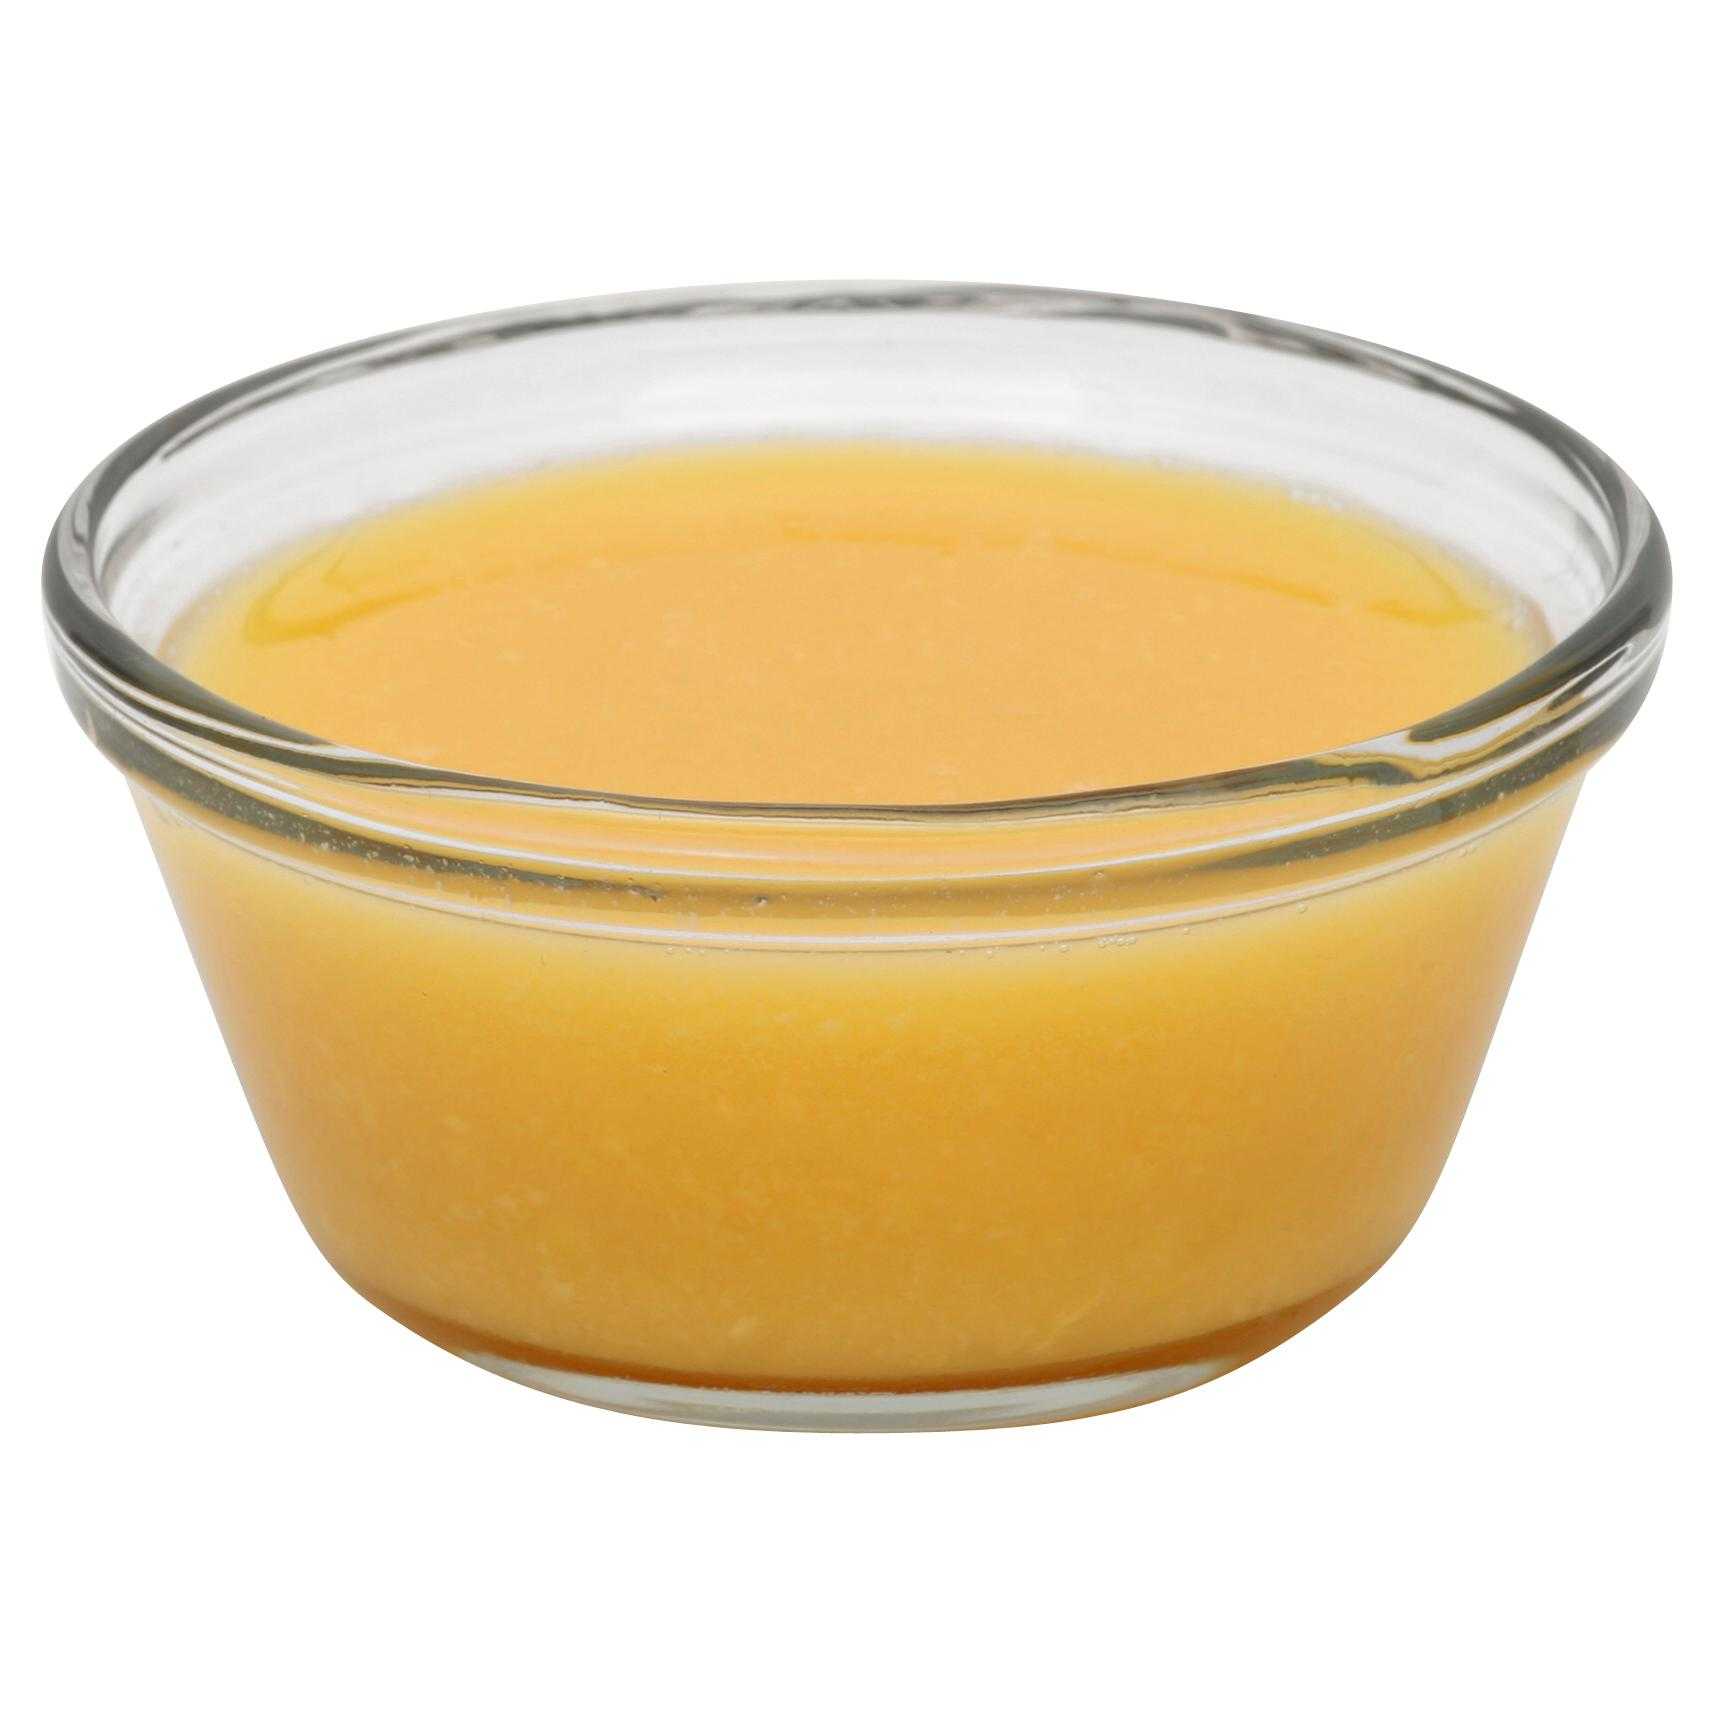 Papetti’s® Frozen Liquid Traditional Scrambled Egg Mix, 6/5 Lb Cartons